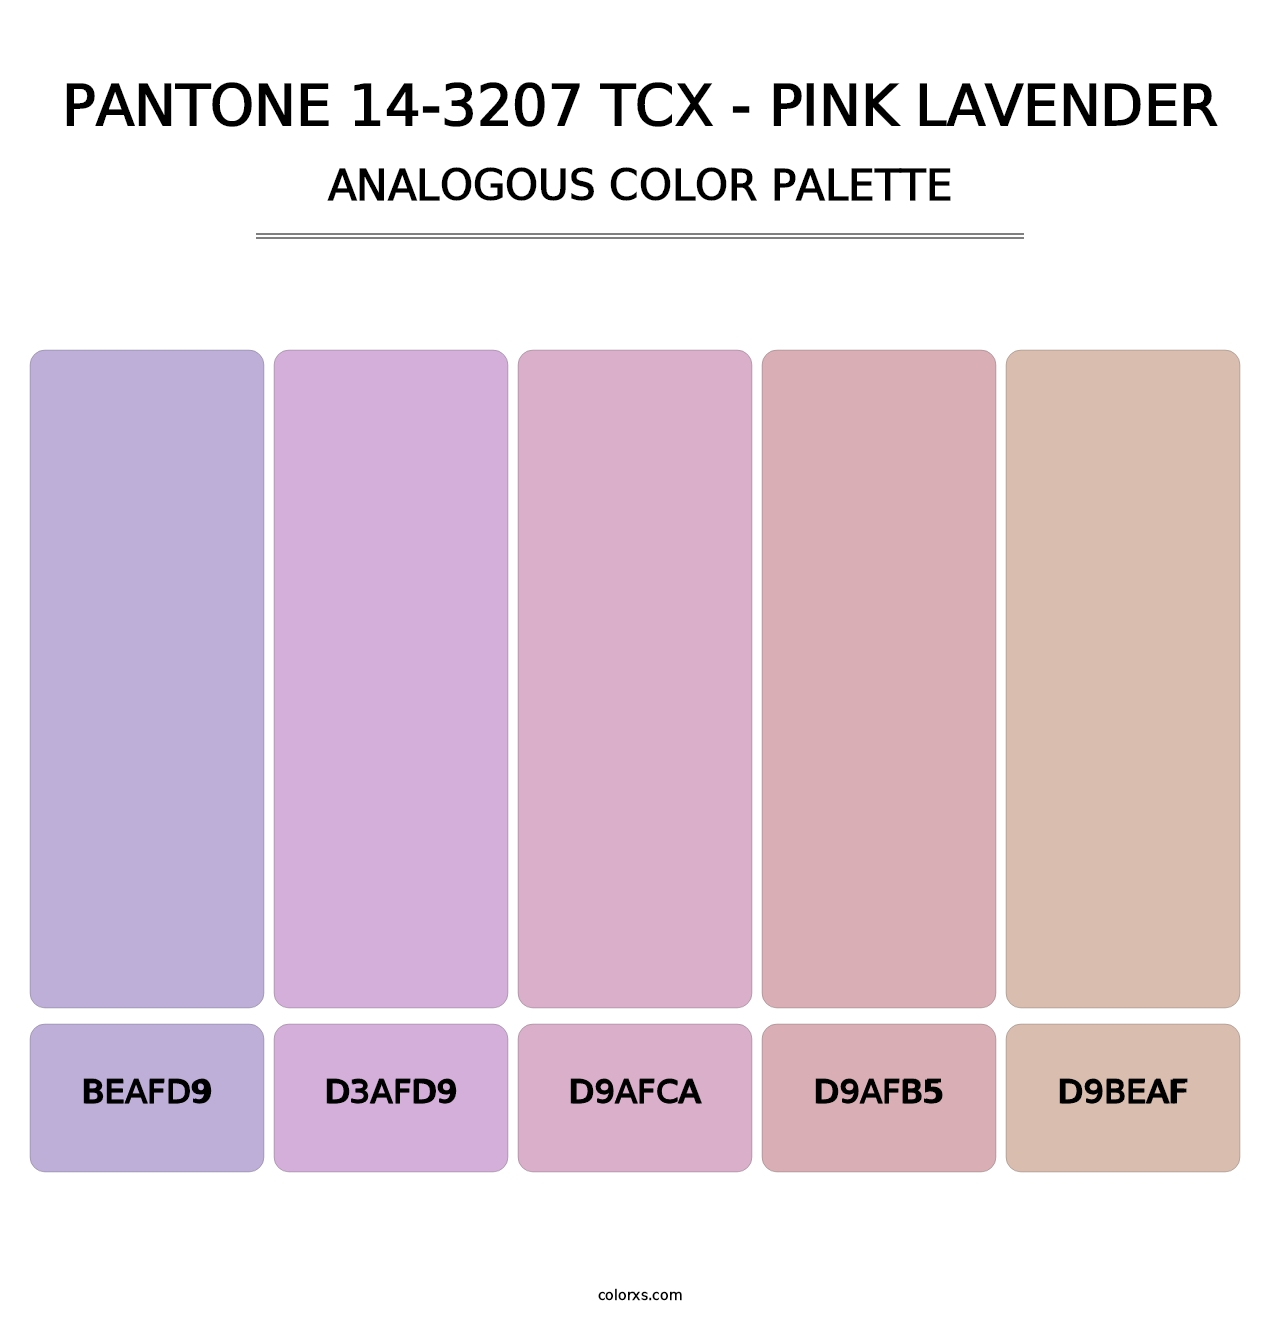 PANTONE 14-3207 TCX - Pink Lavender - Analogous Color Palette